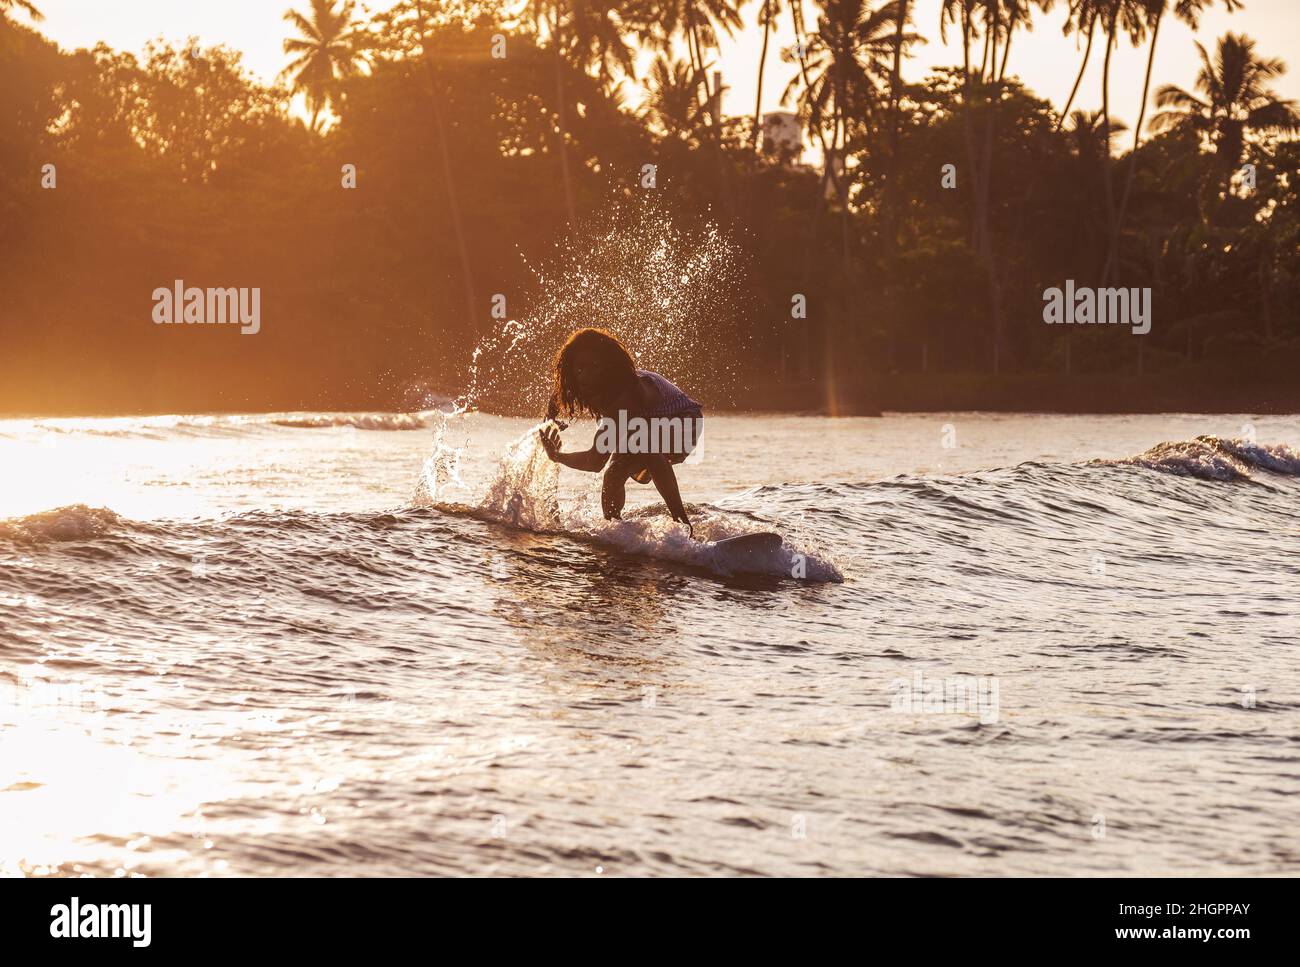 Schwarze langhaarige Teenager junge Silhouette Reiten ein langes Surfbrett. Er fing eine Welle in einer Bucht des indischen Ozeans mit magischem Sonnenuntergang Hintergrund. Extreme Wasser sp Stockfoto